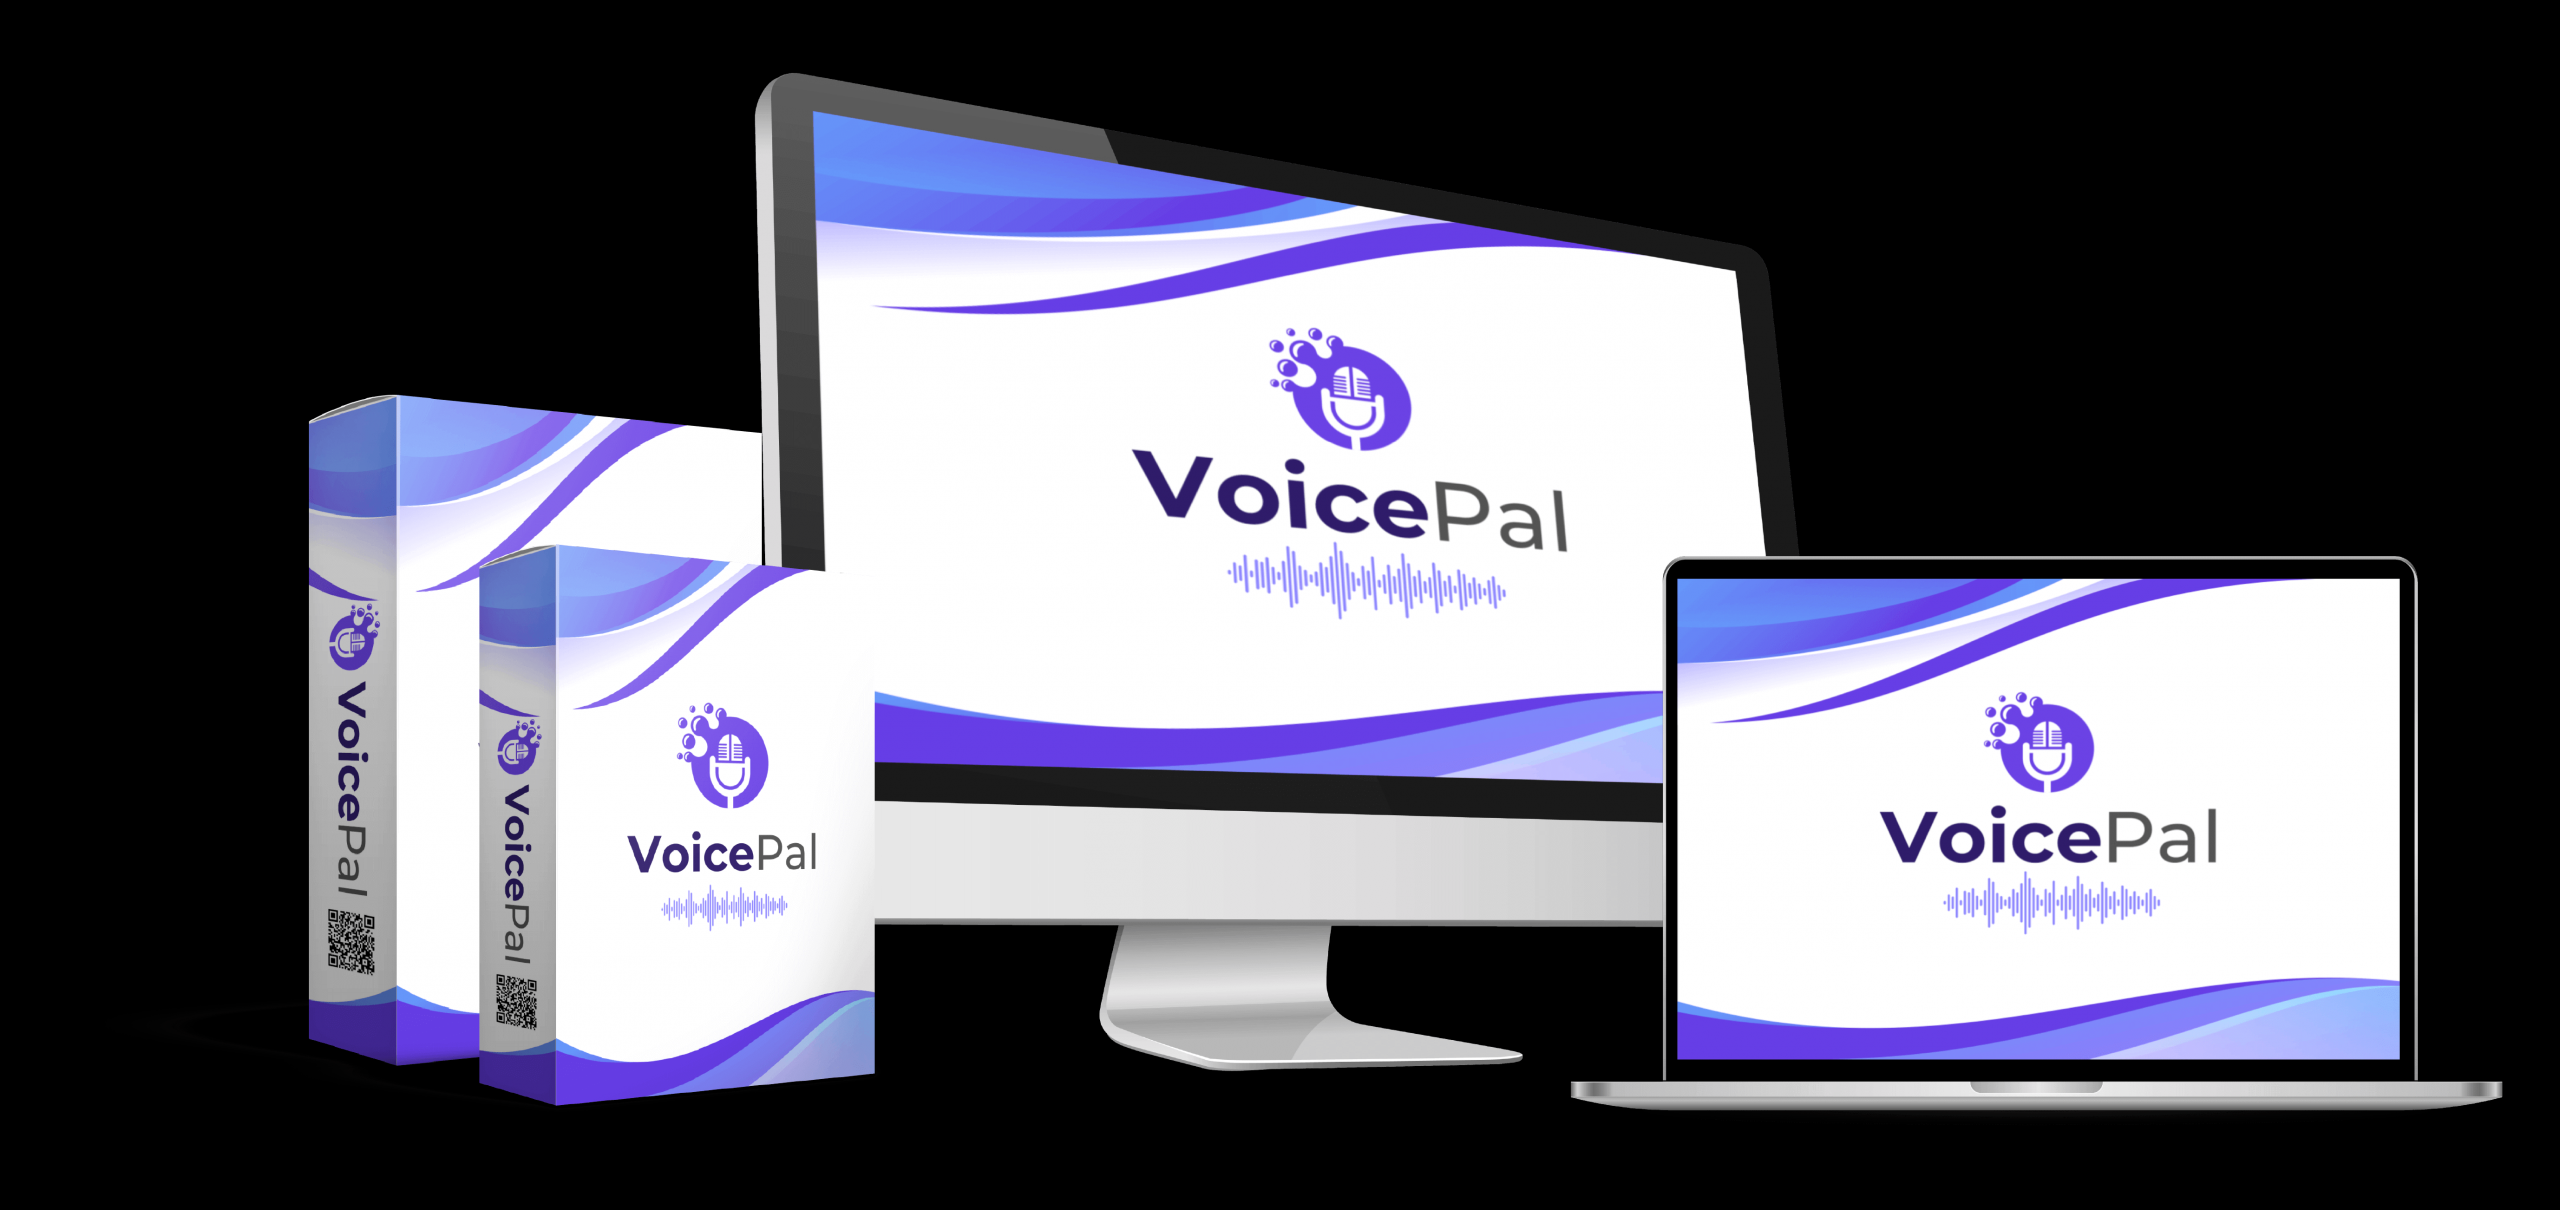 VoicePal